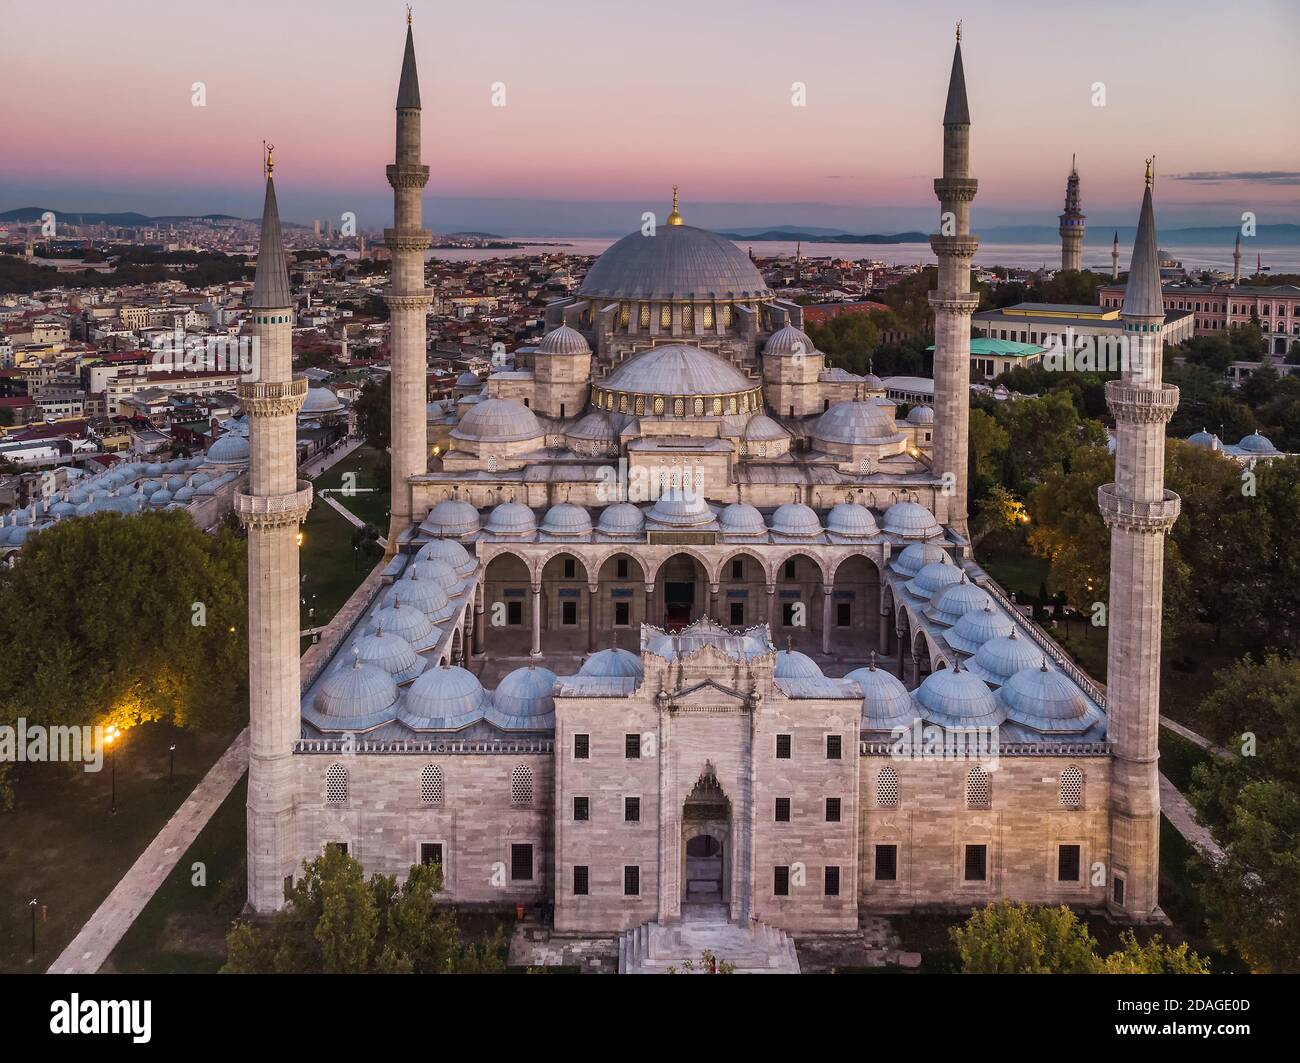 La Moschea di Suleymaniye è un Ottoman Imperial moschea di Istanbul, Turchia. È la più grande moschea della città. Foto Stock